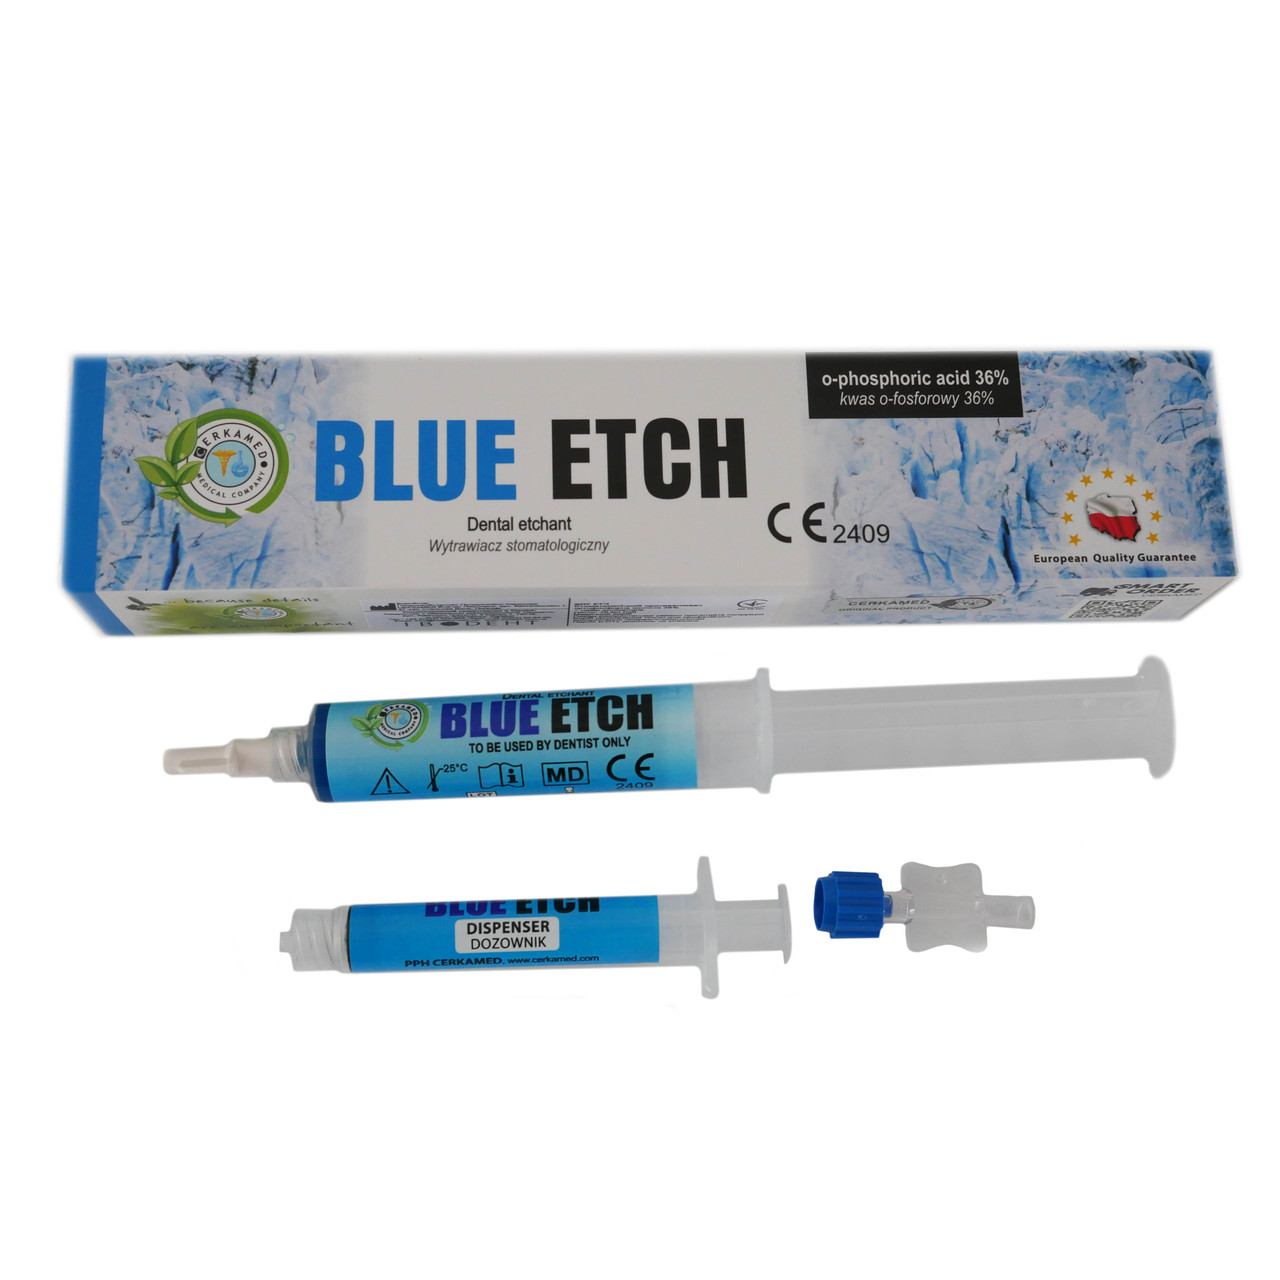 Blue Etch, травильный гель, Cerkamed стоматологические материалы, общее .